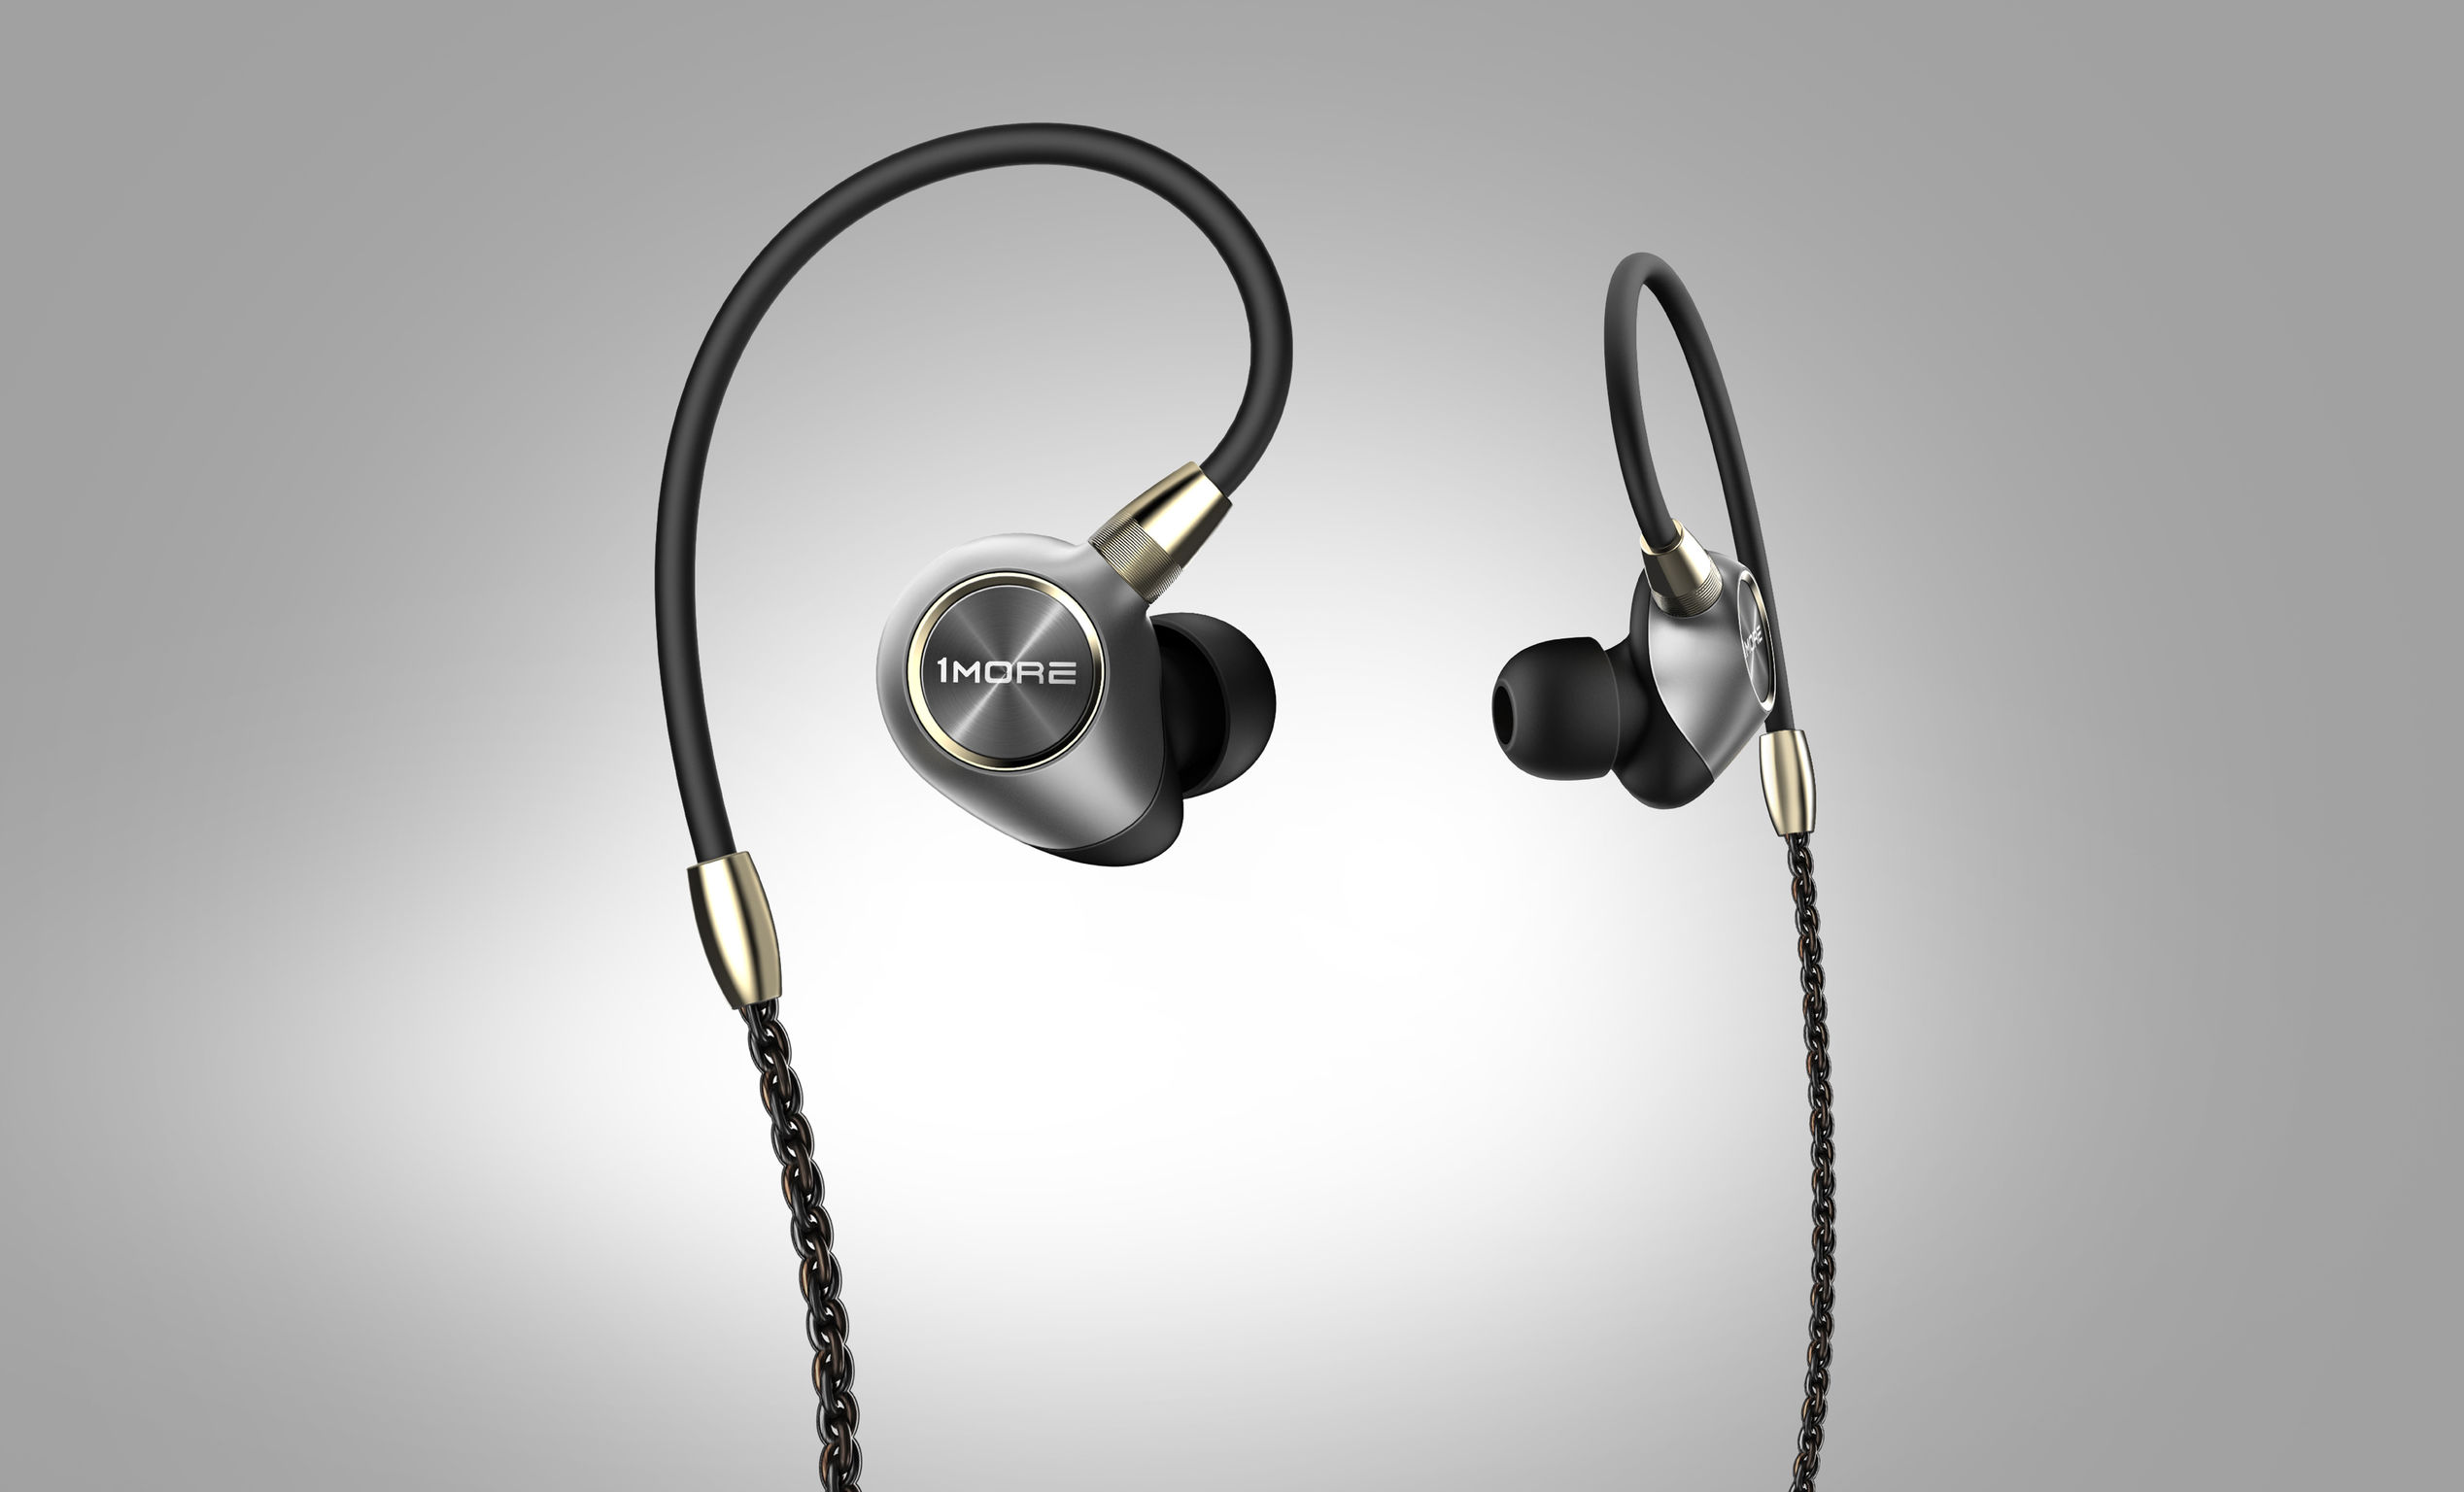 1MORE Penta-Driver In-Ear Headphones